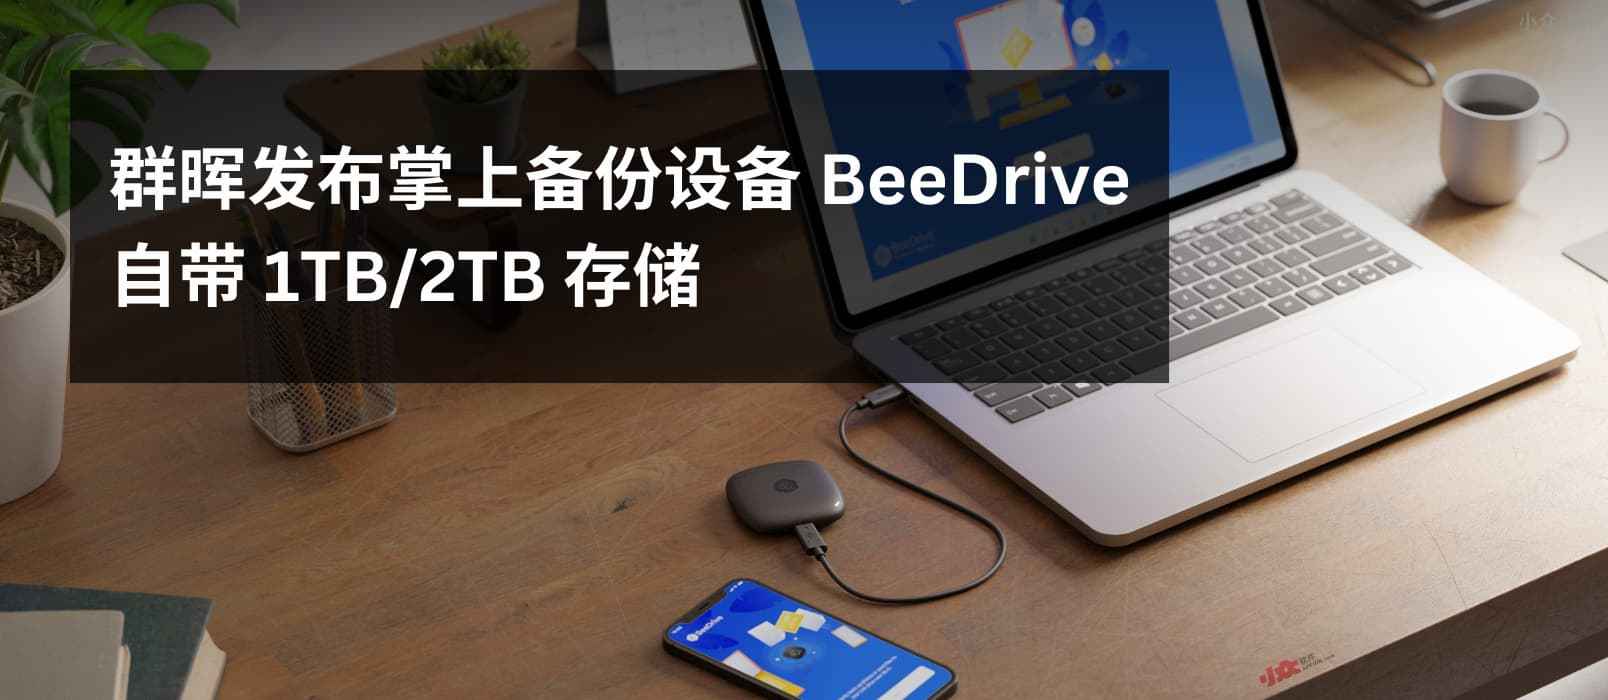 群晖发布掌上备份设备 BeeDrive，自带 1TB/2TB SSD 1